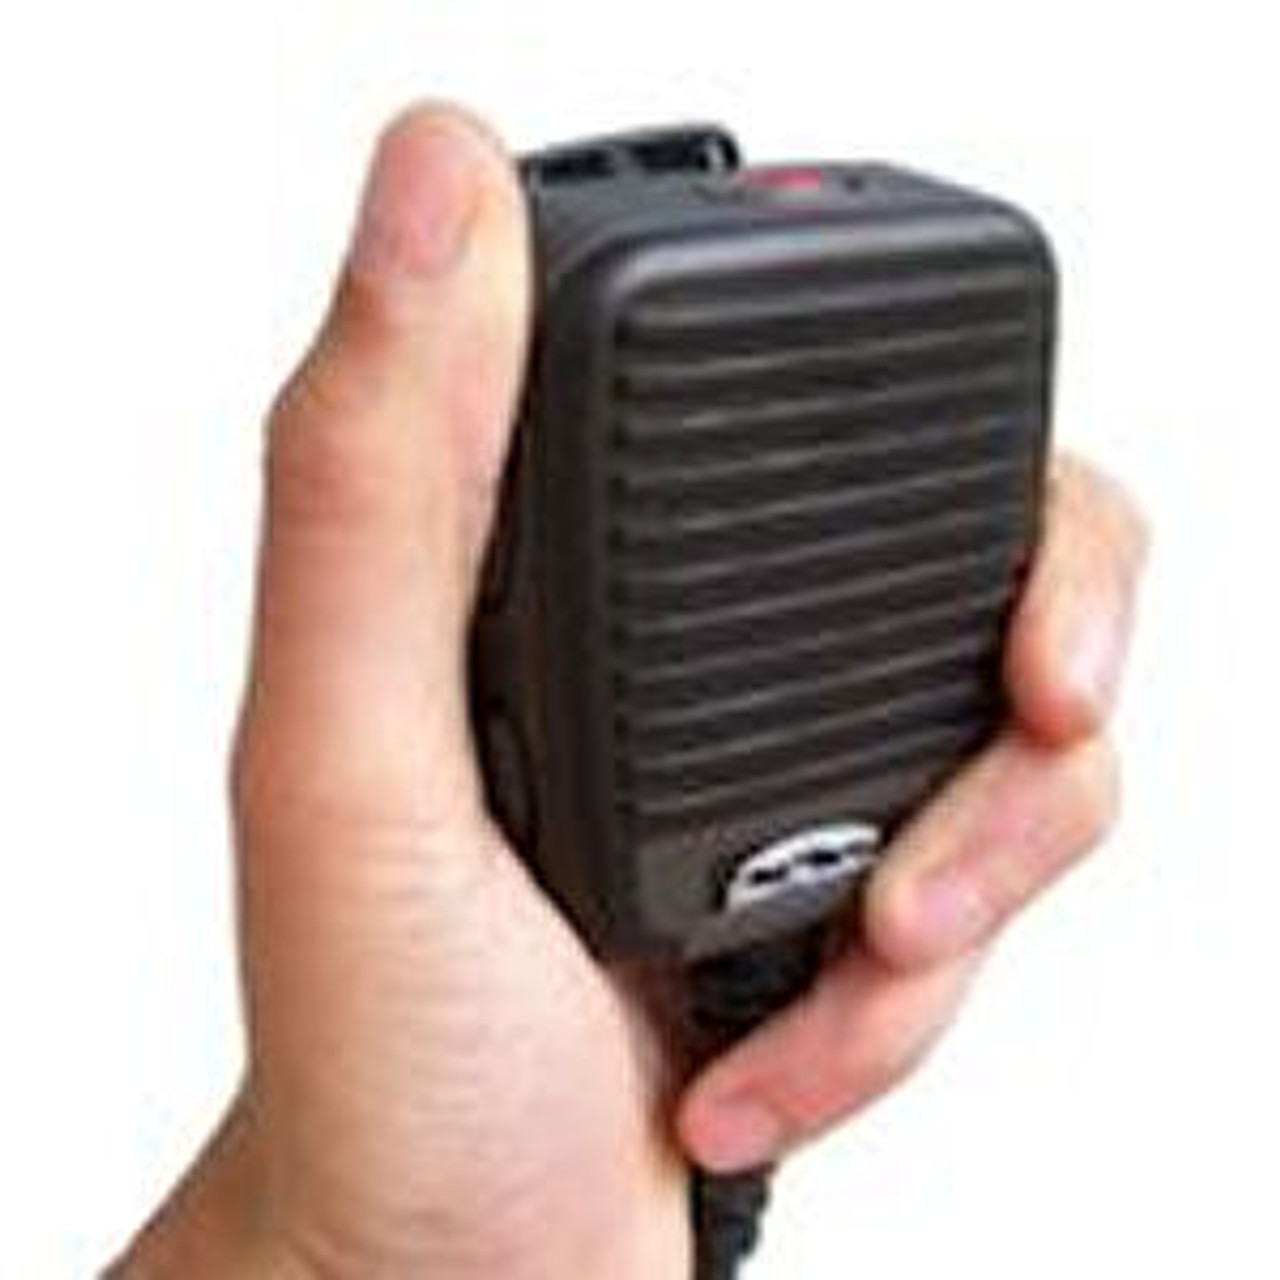 Motorola MTP700 Ruggedized Waterproof IP68 High Volume Speaker Mic